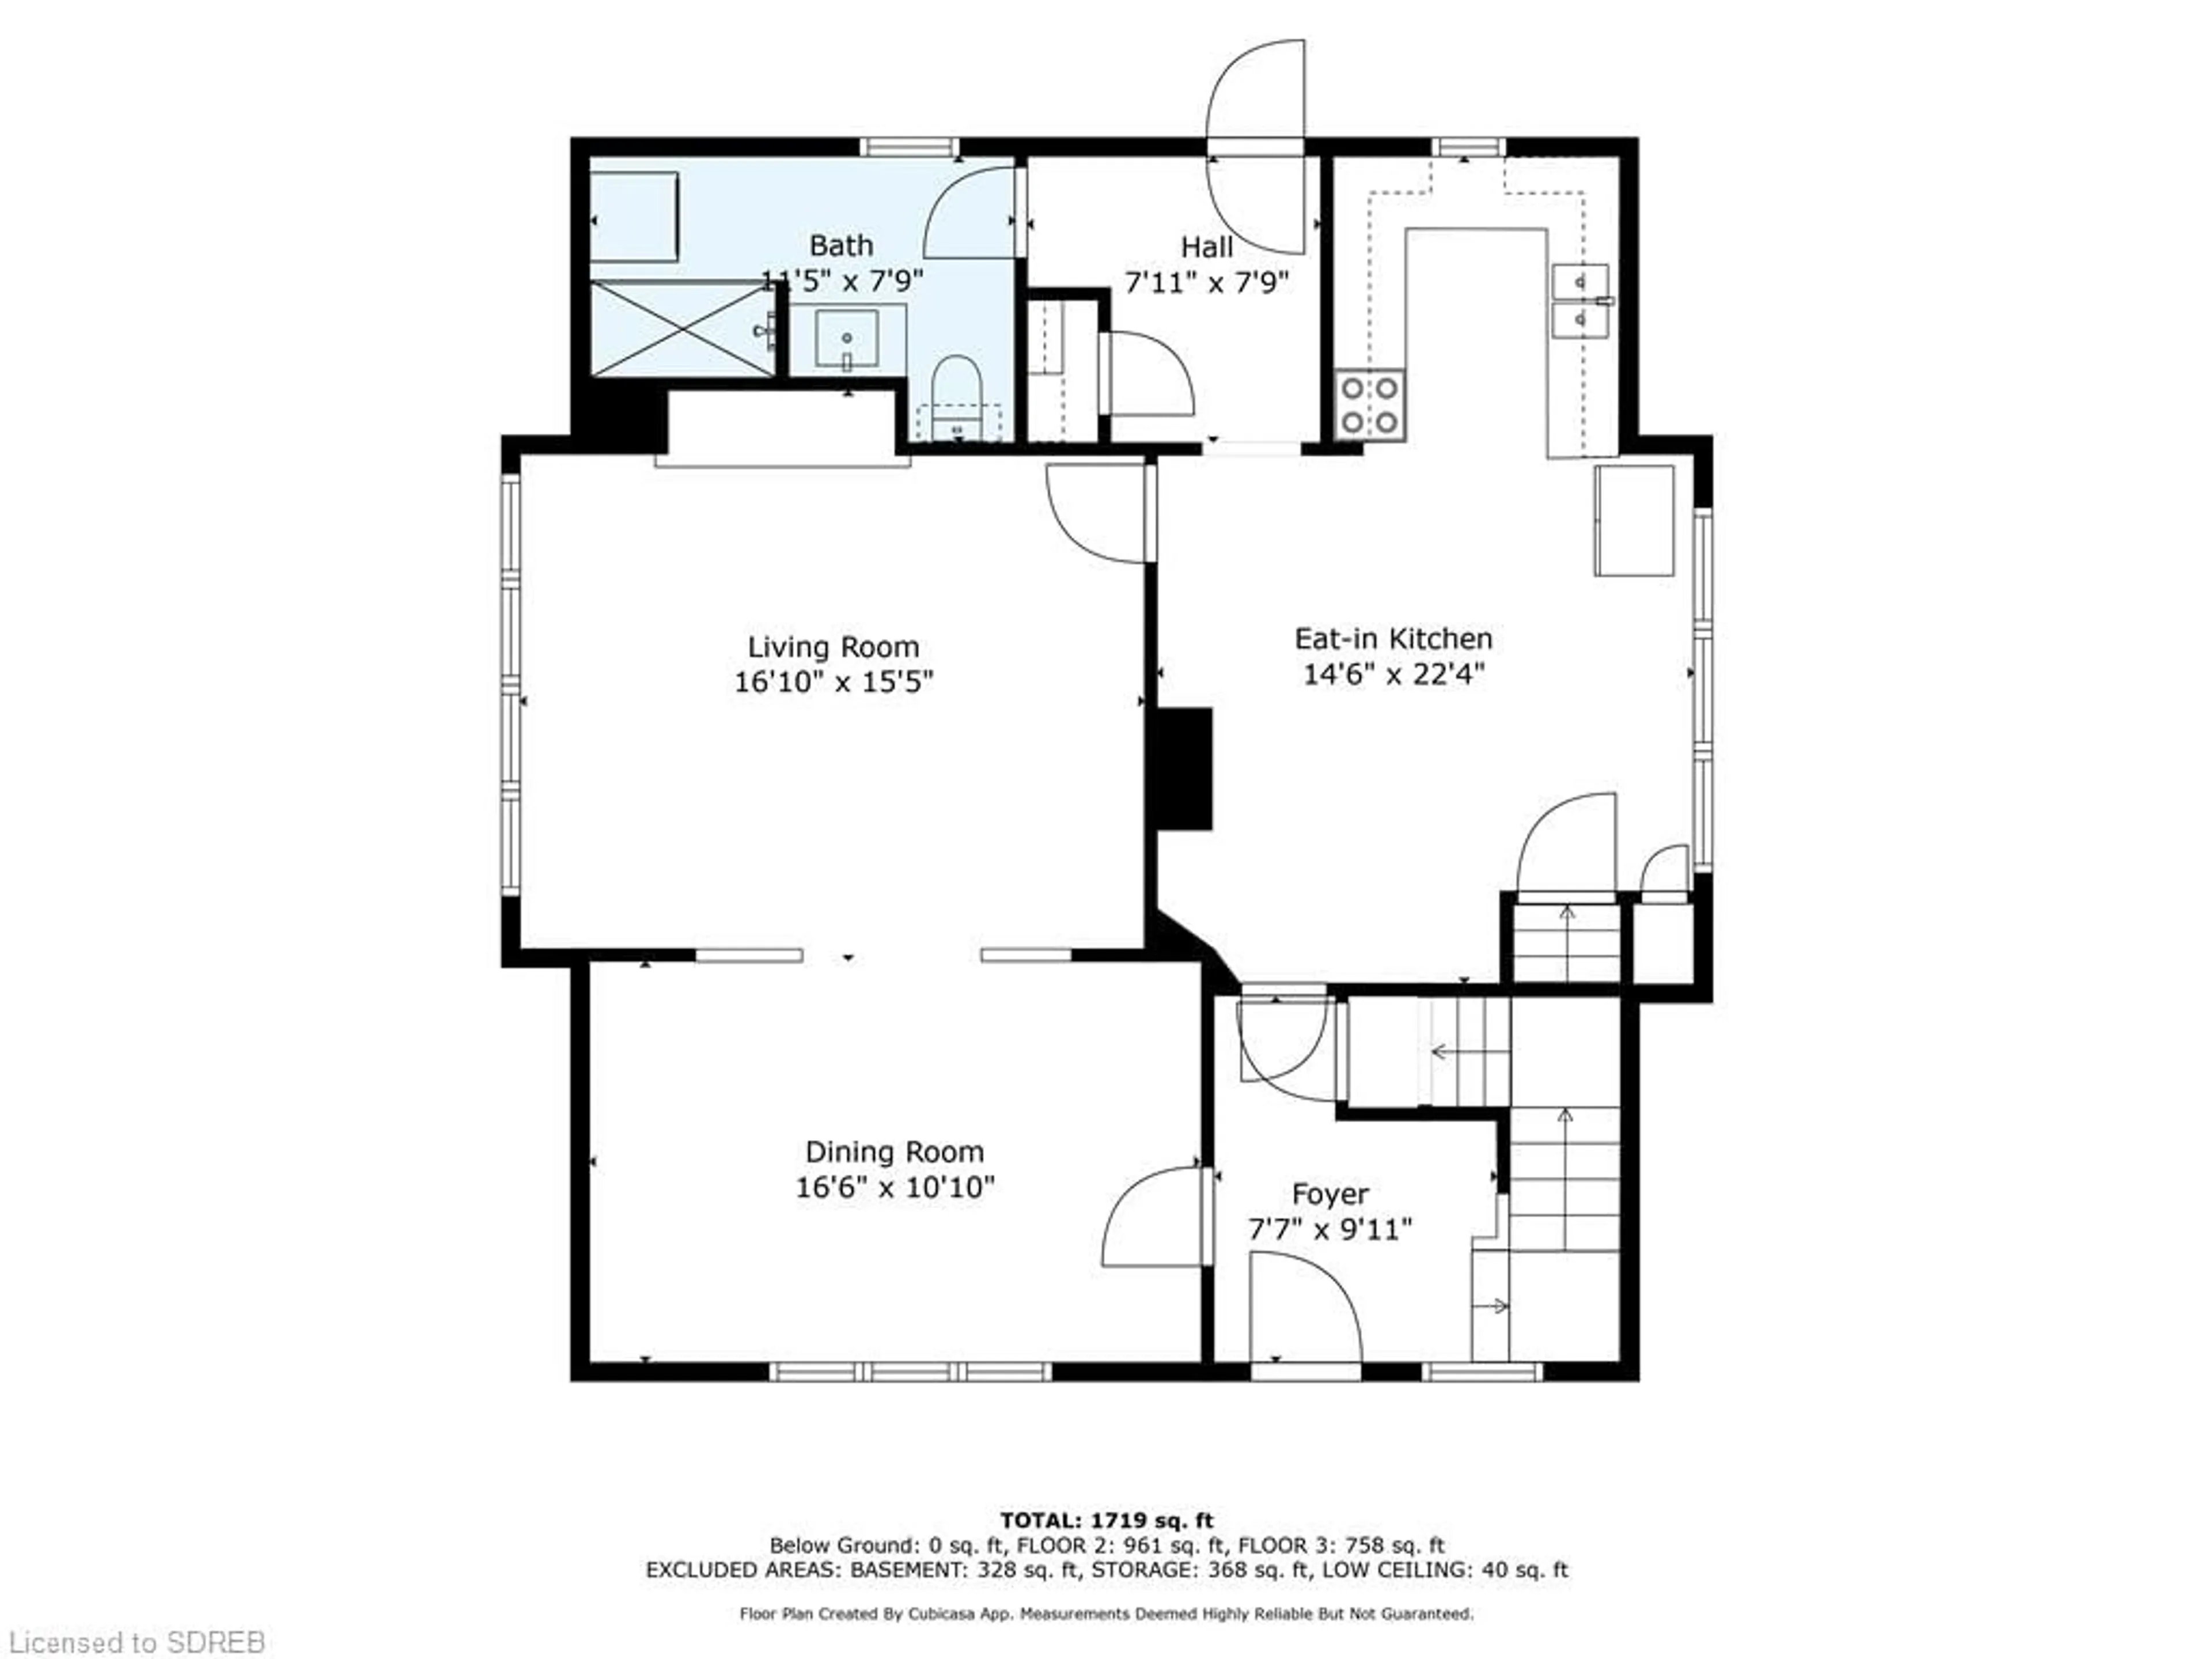 Floor plan for 2835 Cockshutt Rd, Waterford Ontario N0E 1Y0